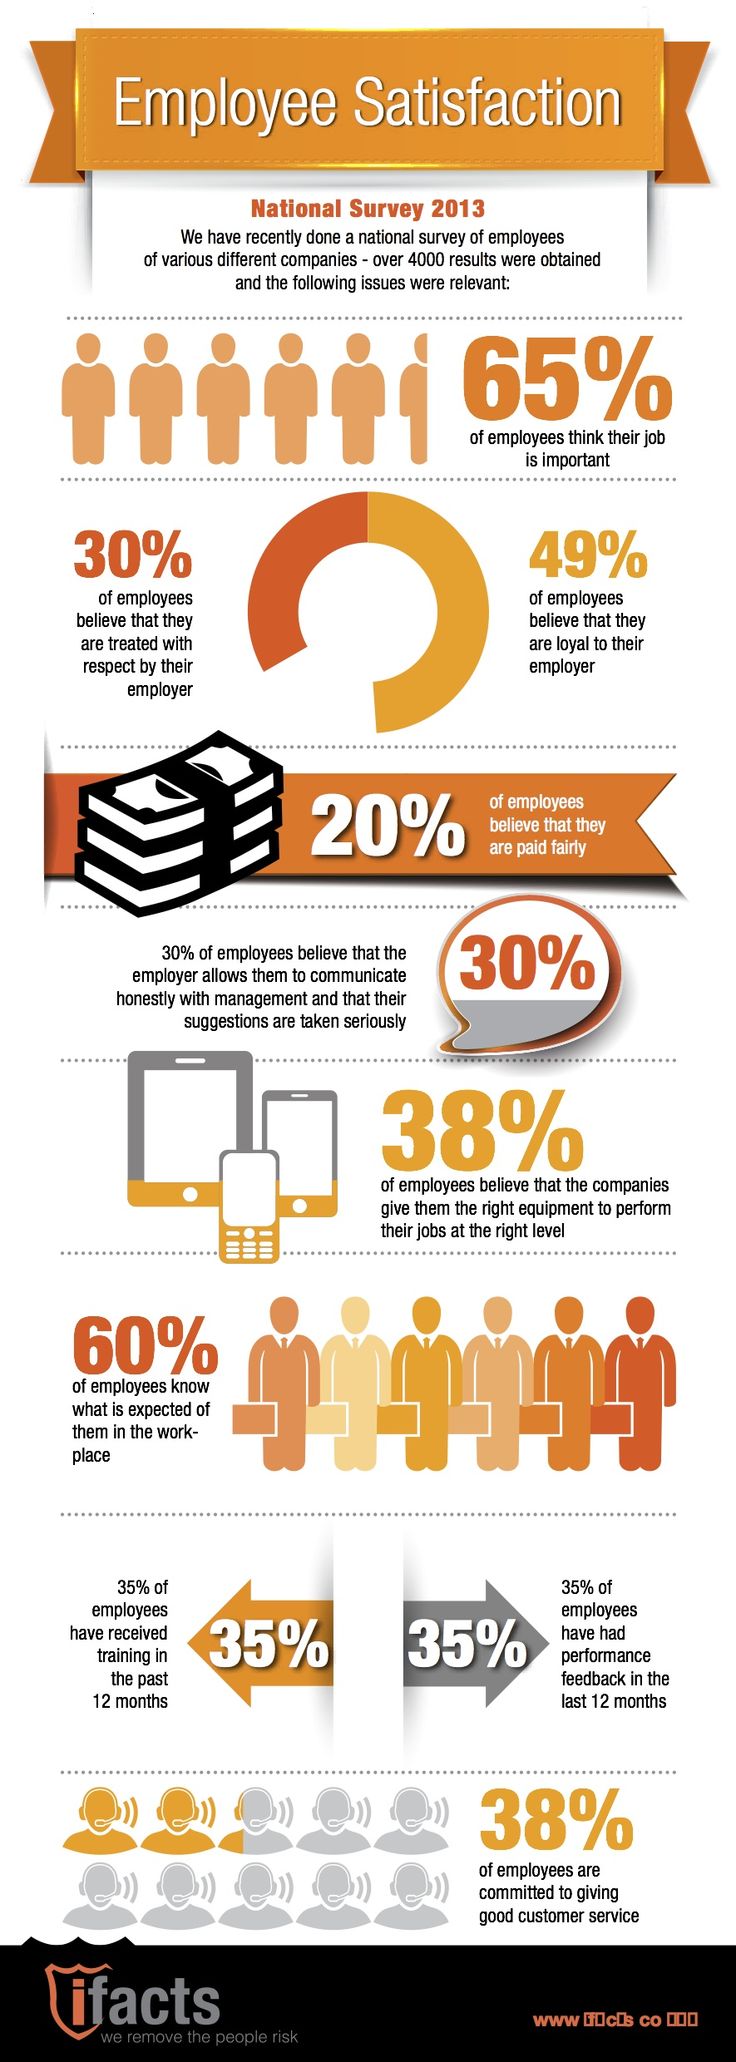 Employee Satisfaction Infographic 2